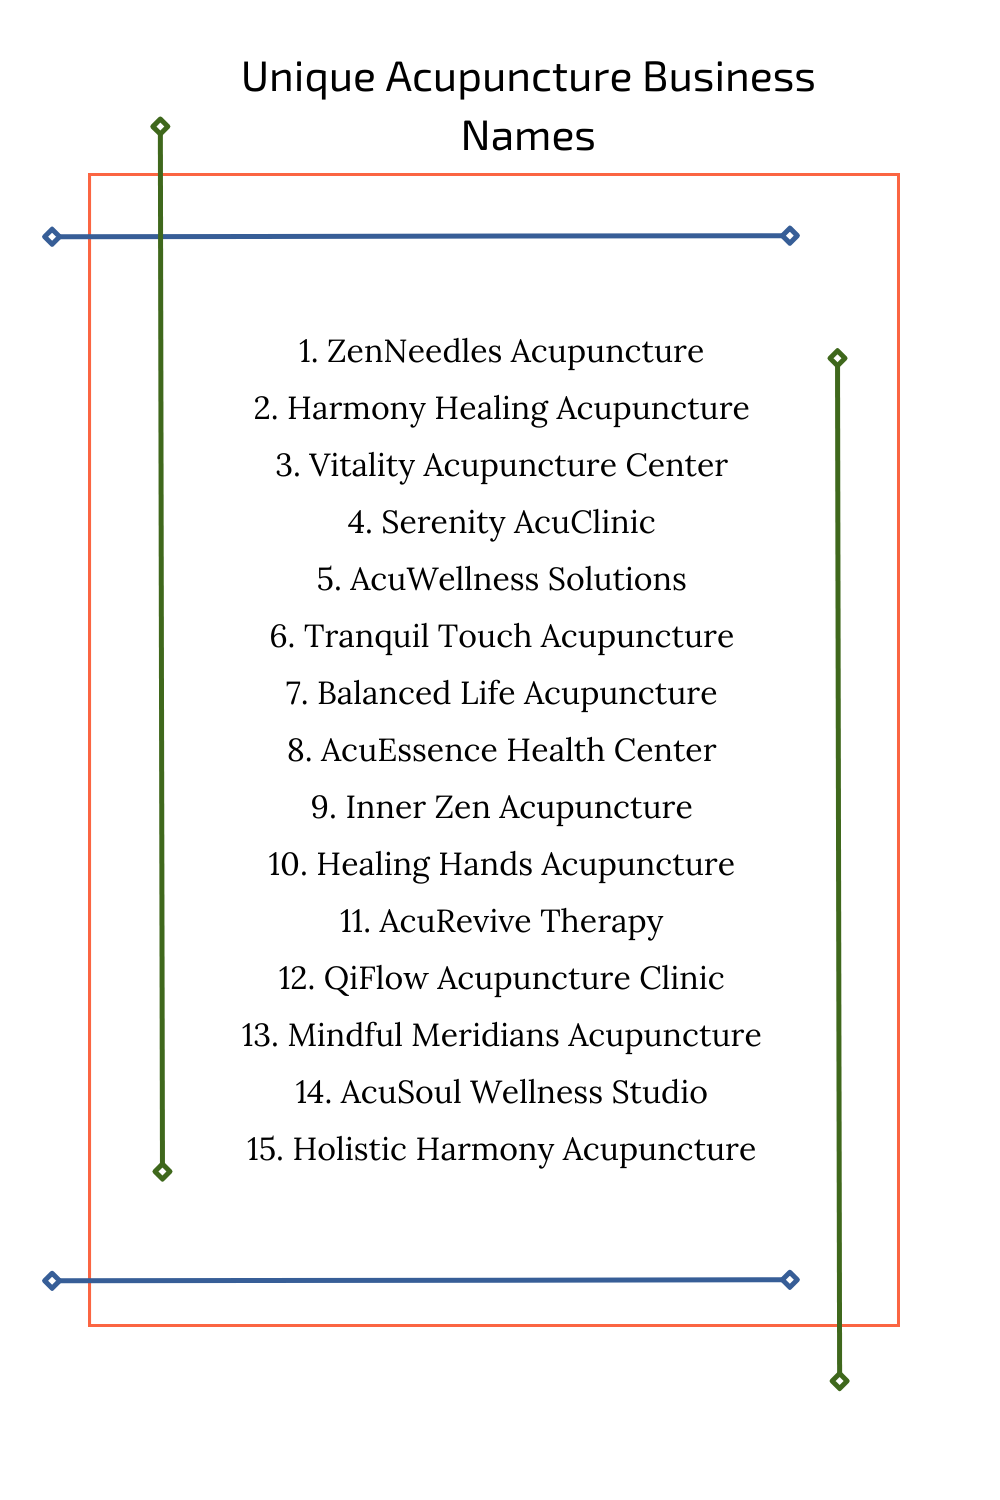 Unique Acupuncture Business Names